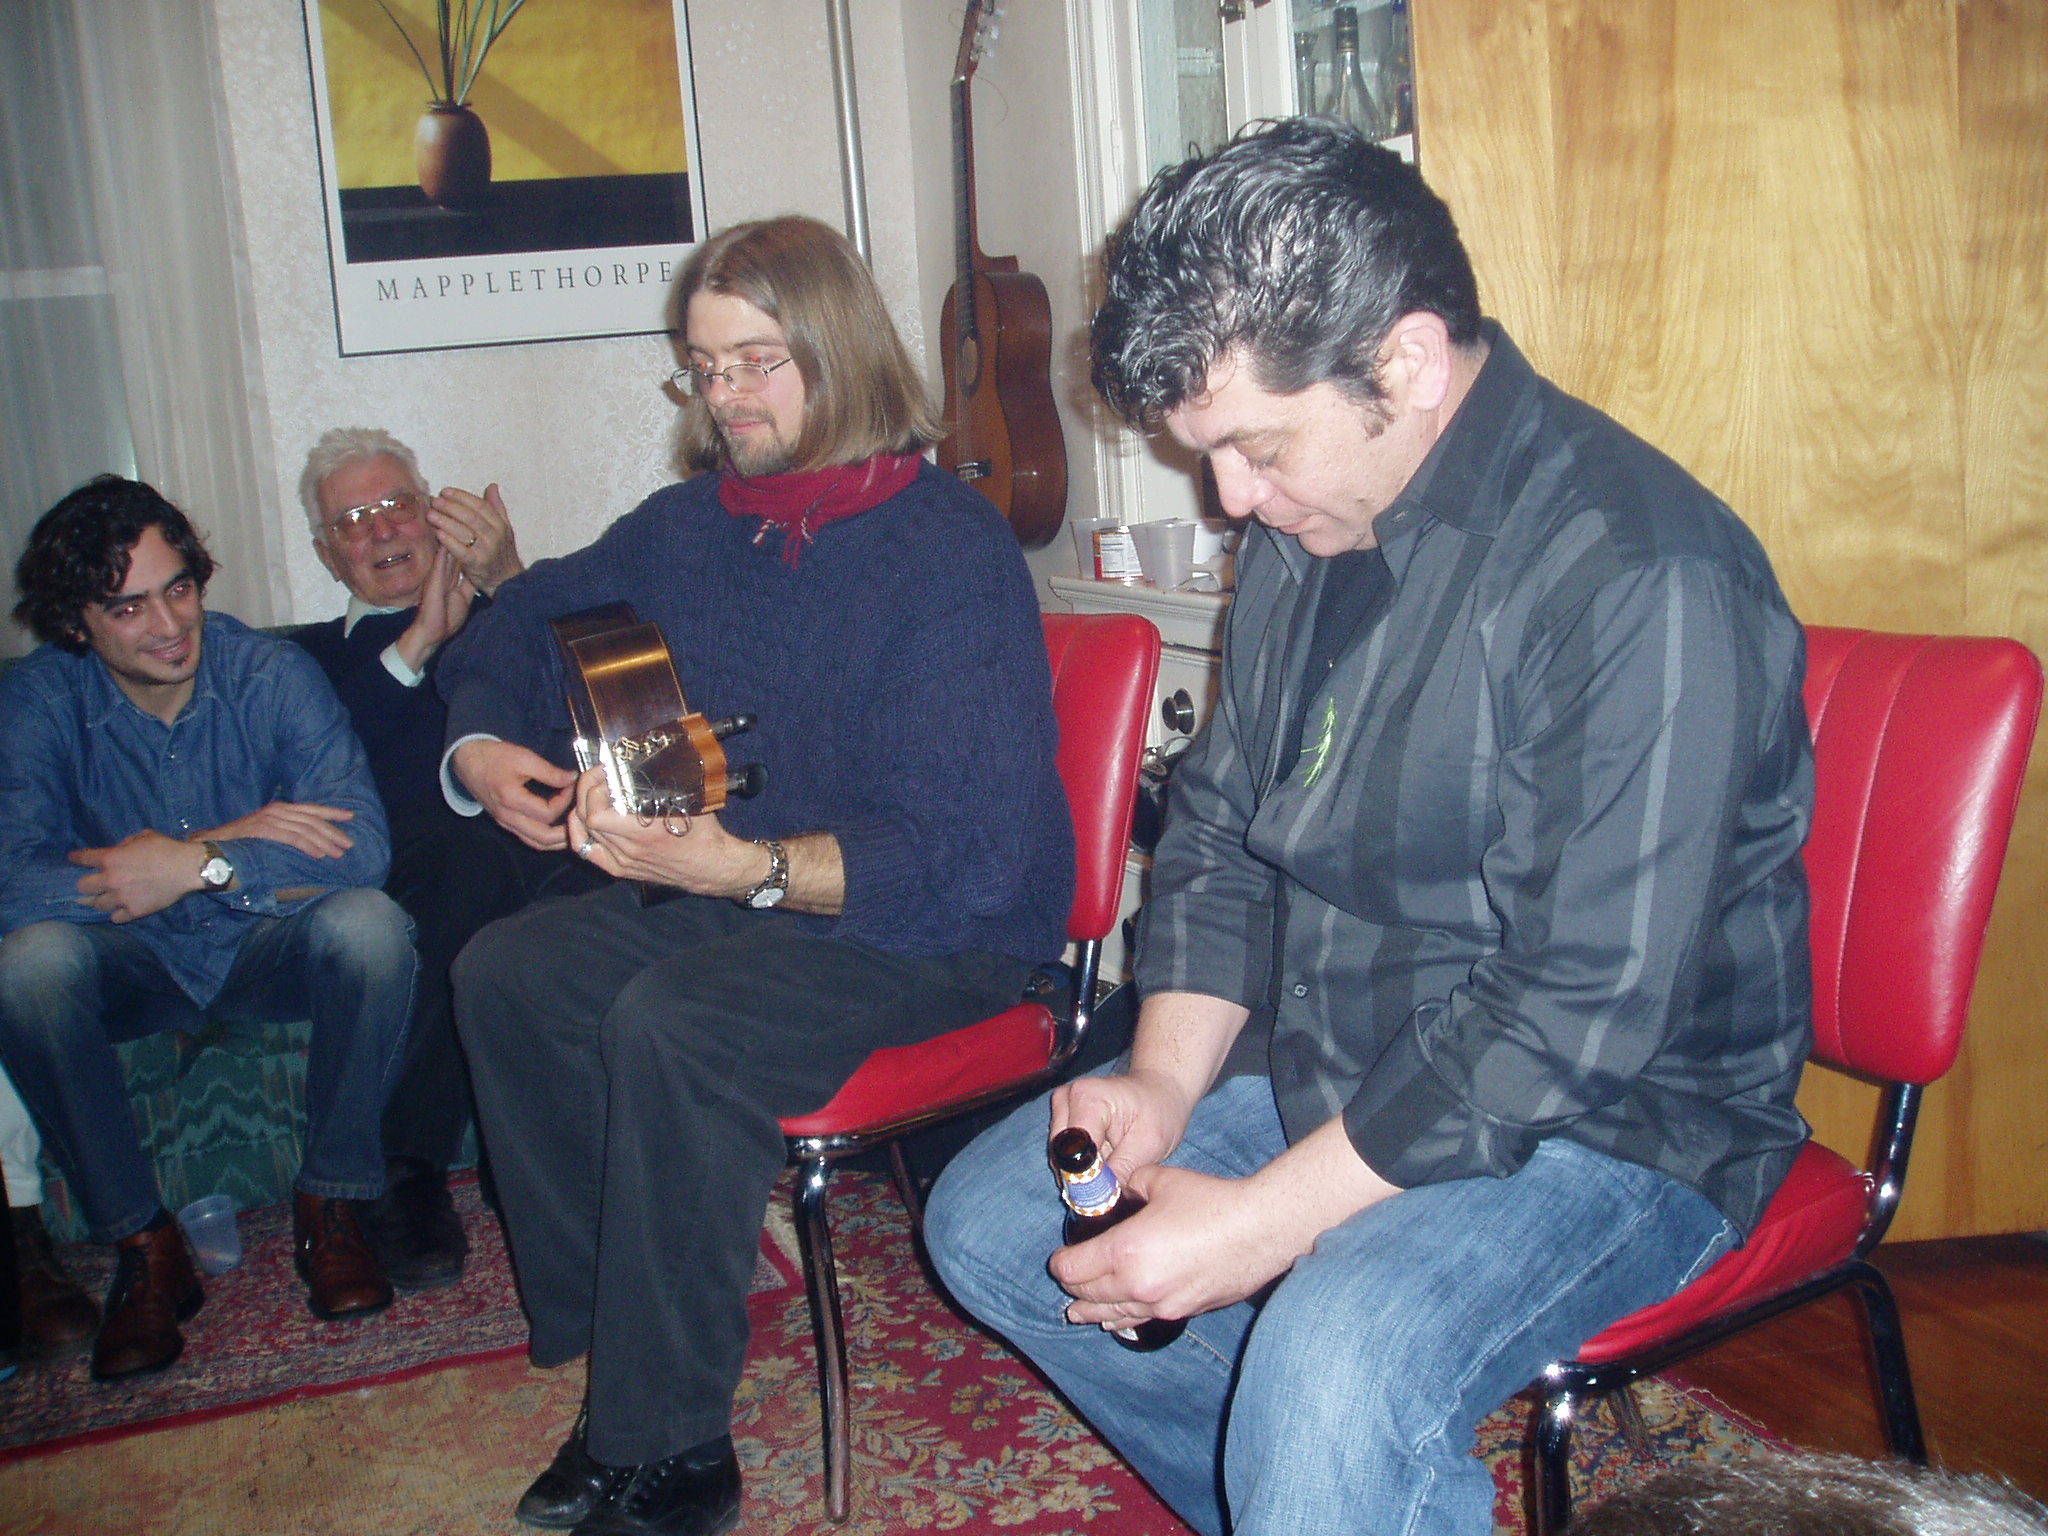 Fiesta posterior con Tomás cantando, el tocaor americano Juanito Pascual y Pierre a las palmas. (Fotografía de Ramón Soler, 2004)